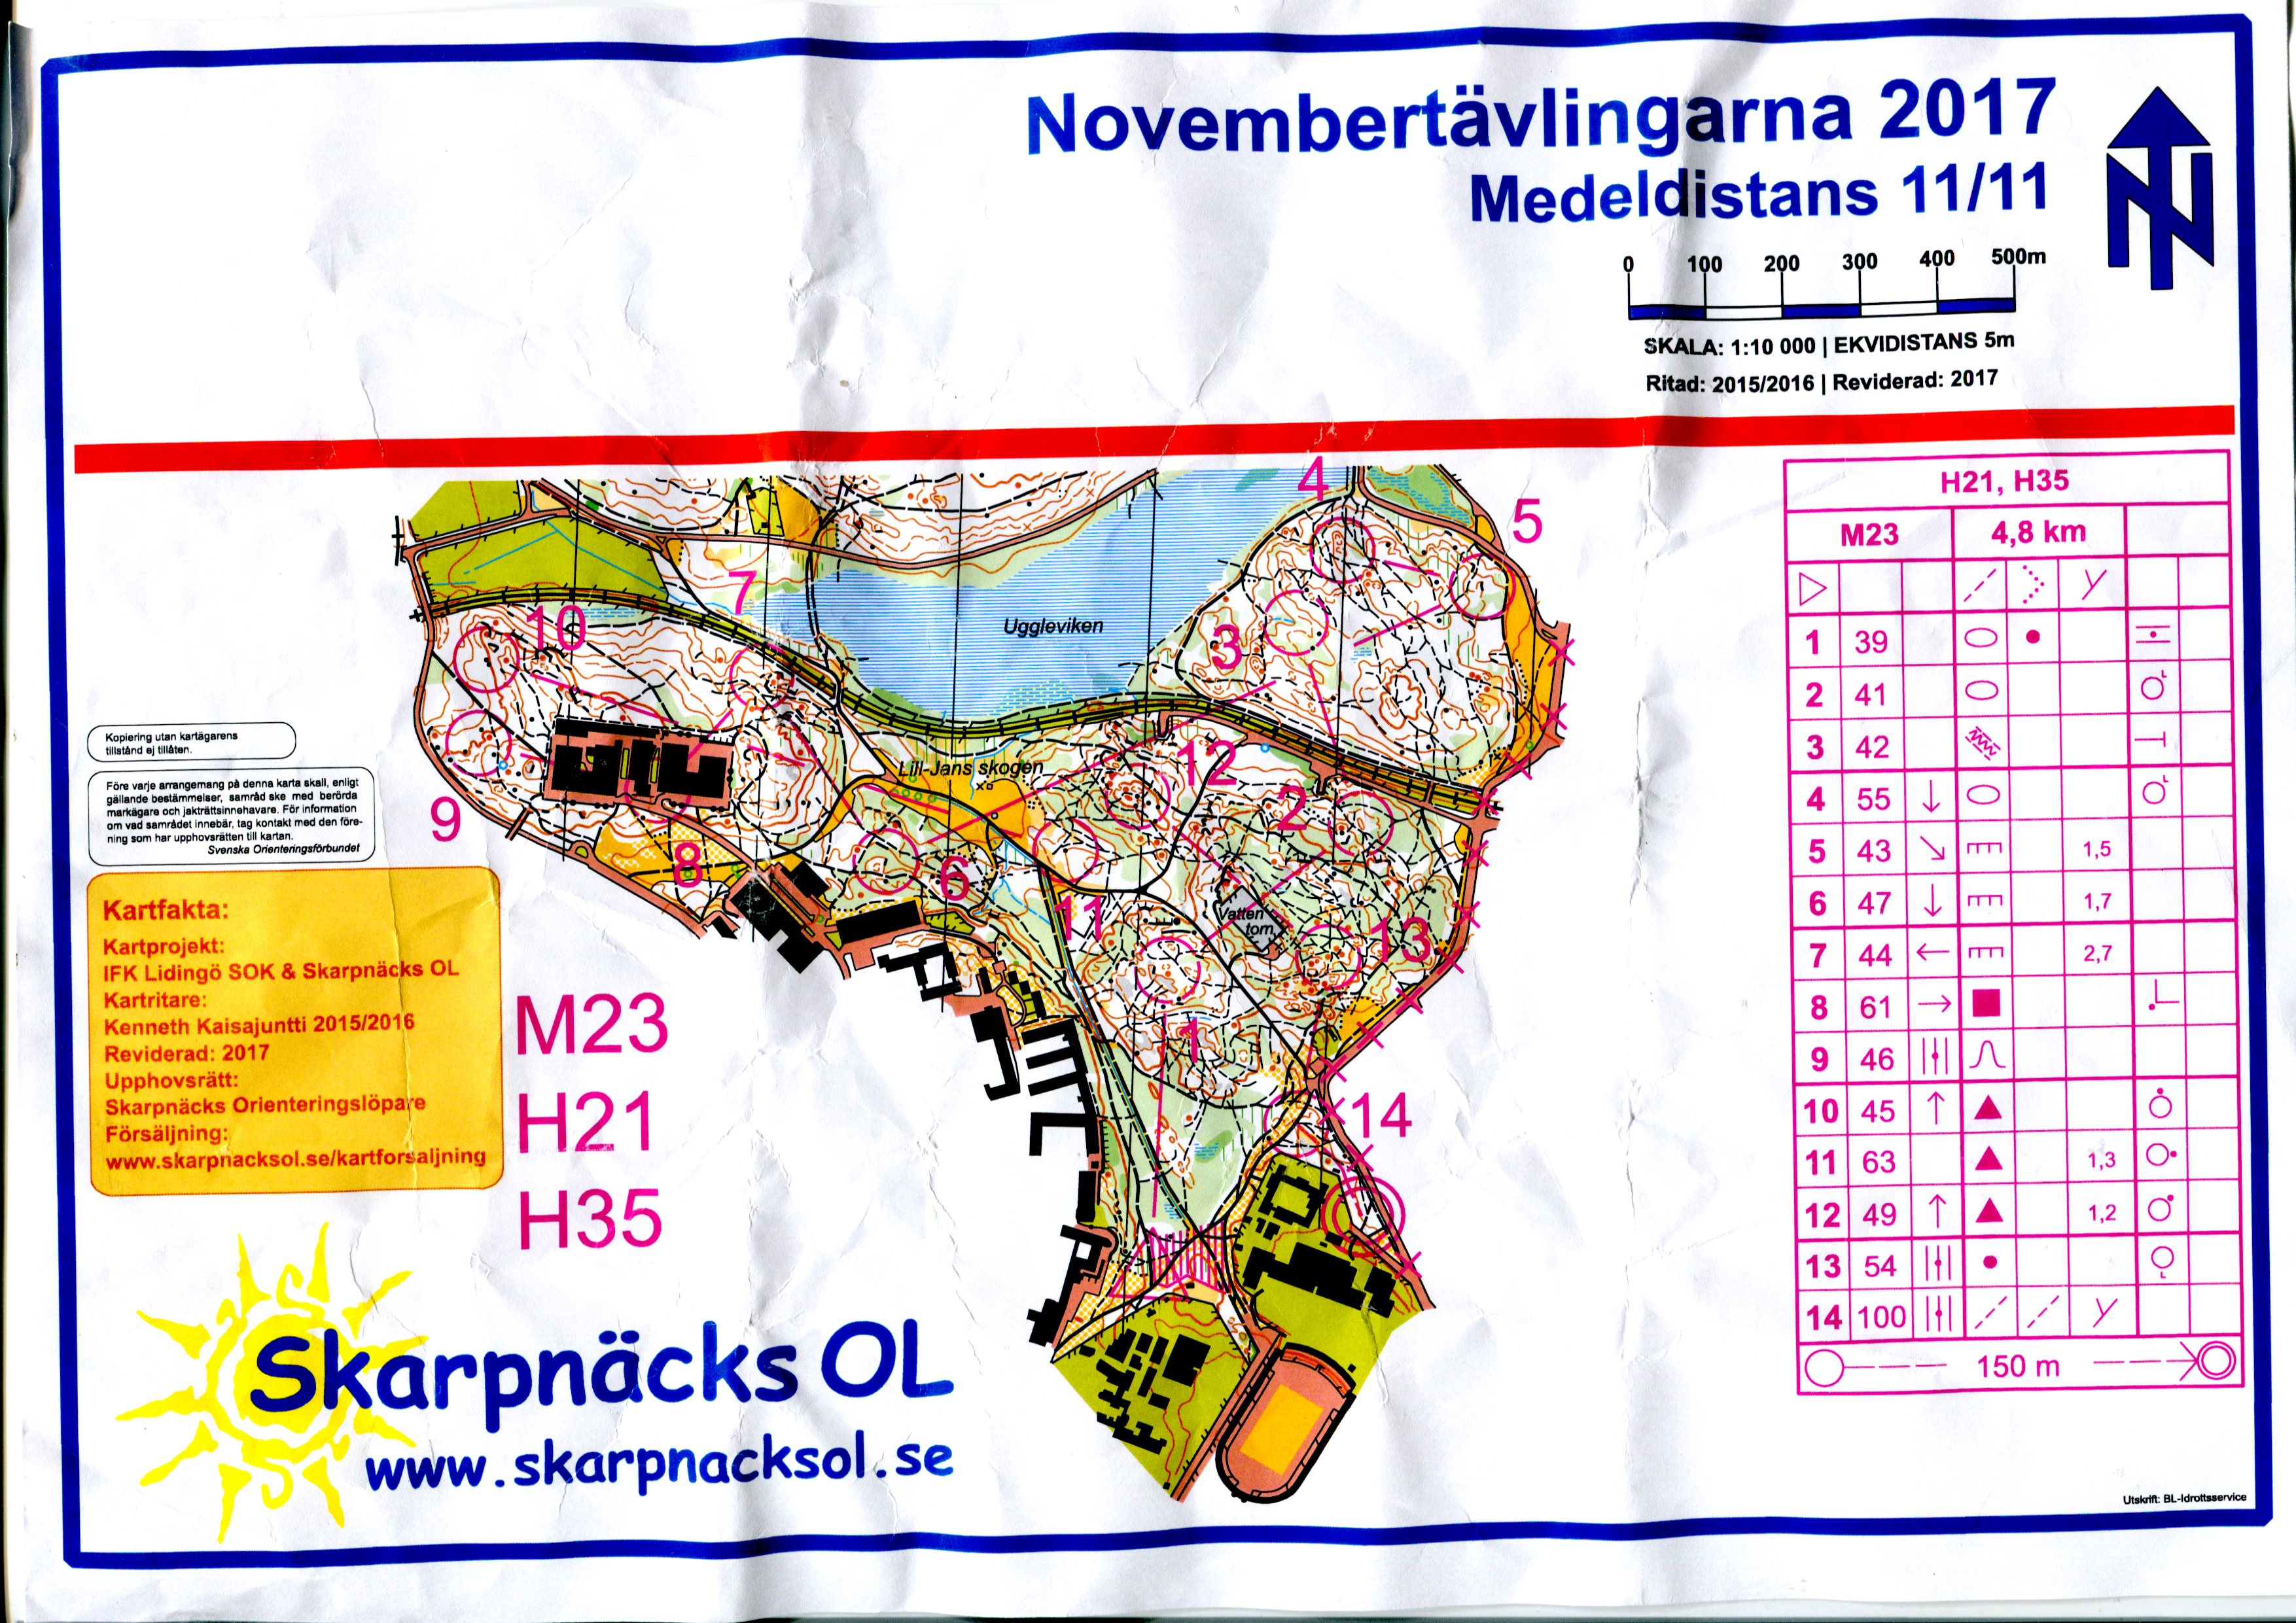 Novembertävlingarna, medel (10-11-2017)